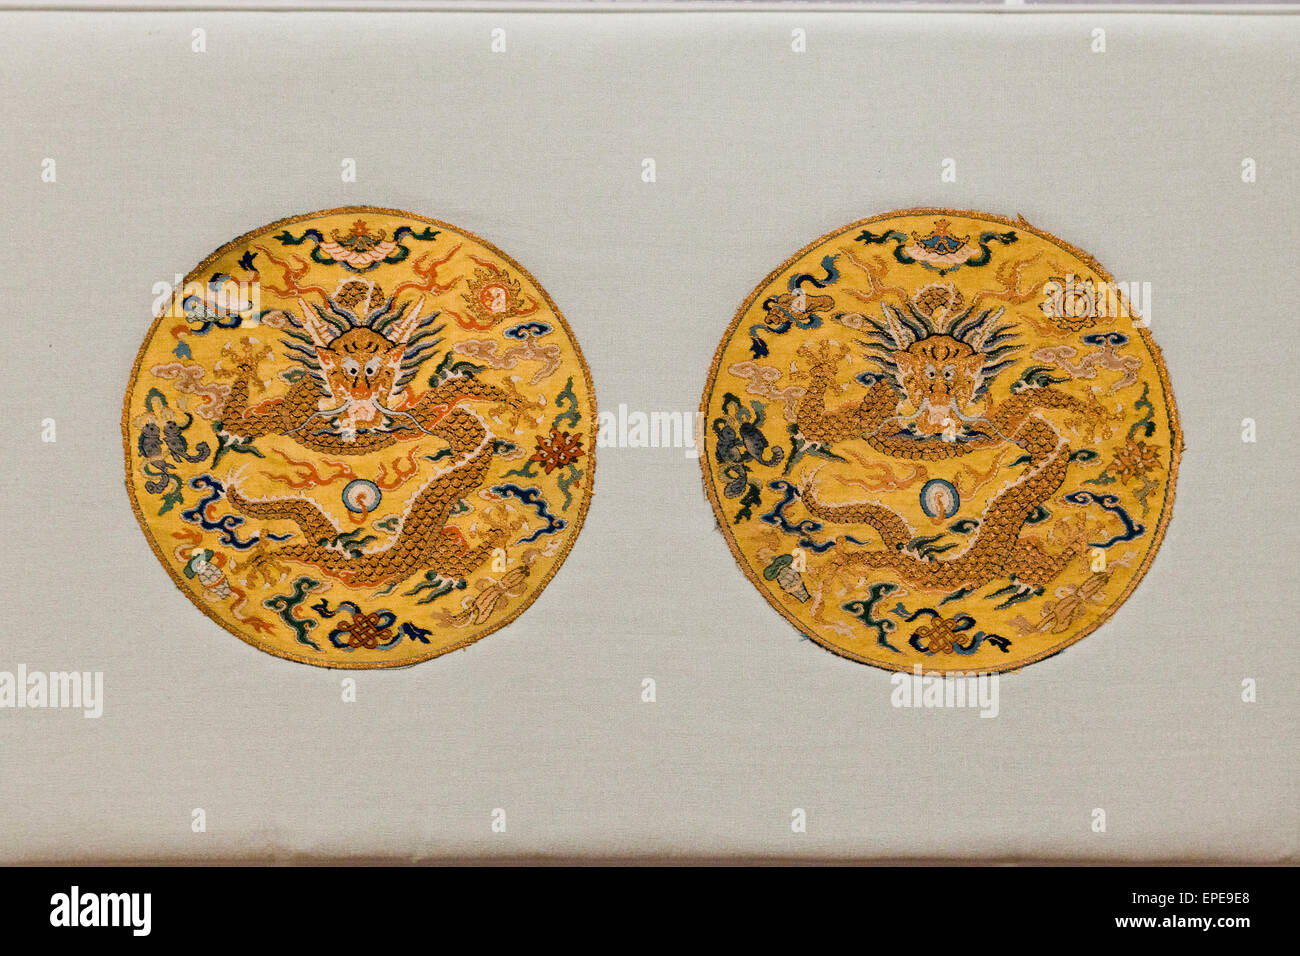 Kaiserlichen Insignien Rondelle ca. Qing-Dynastie, China - George Washington Universität Textilmuseum - Washington, DC USA Stockfoto